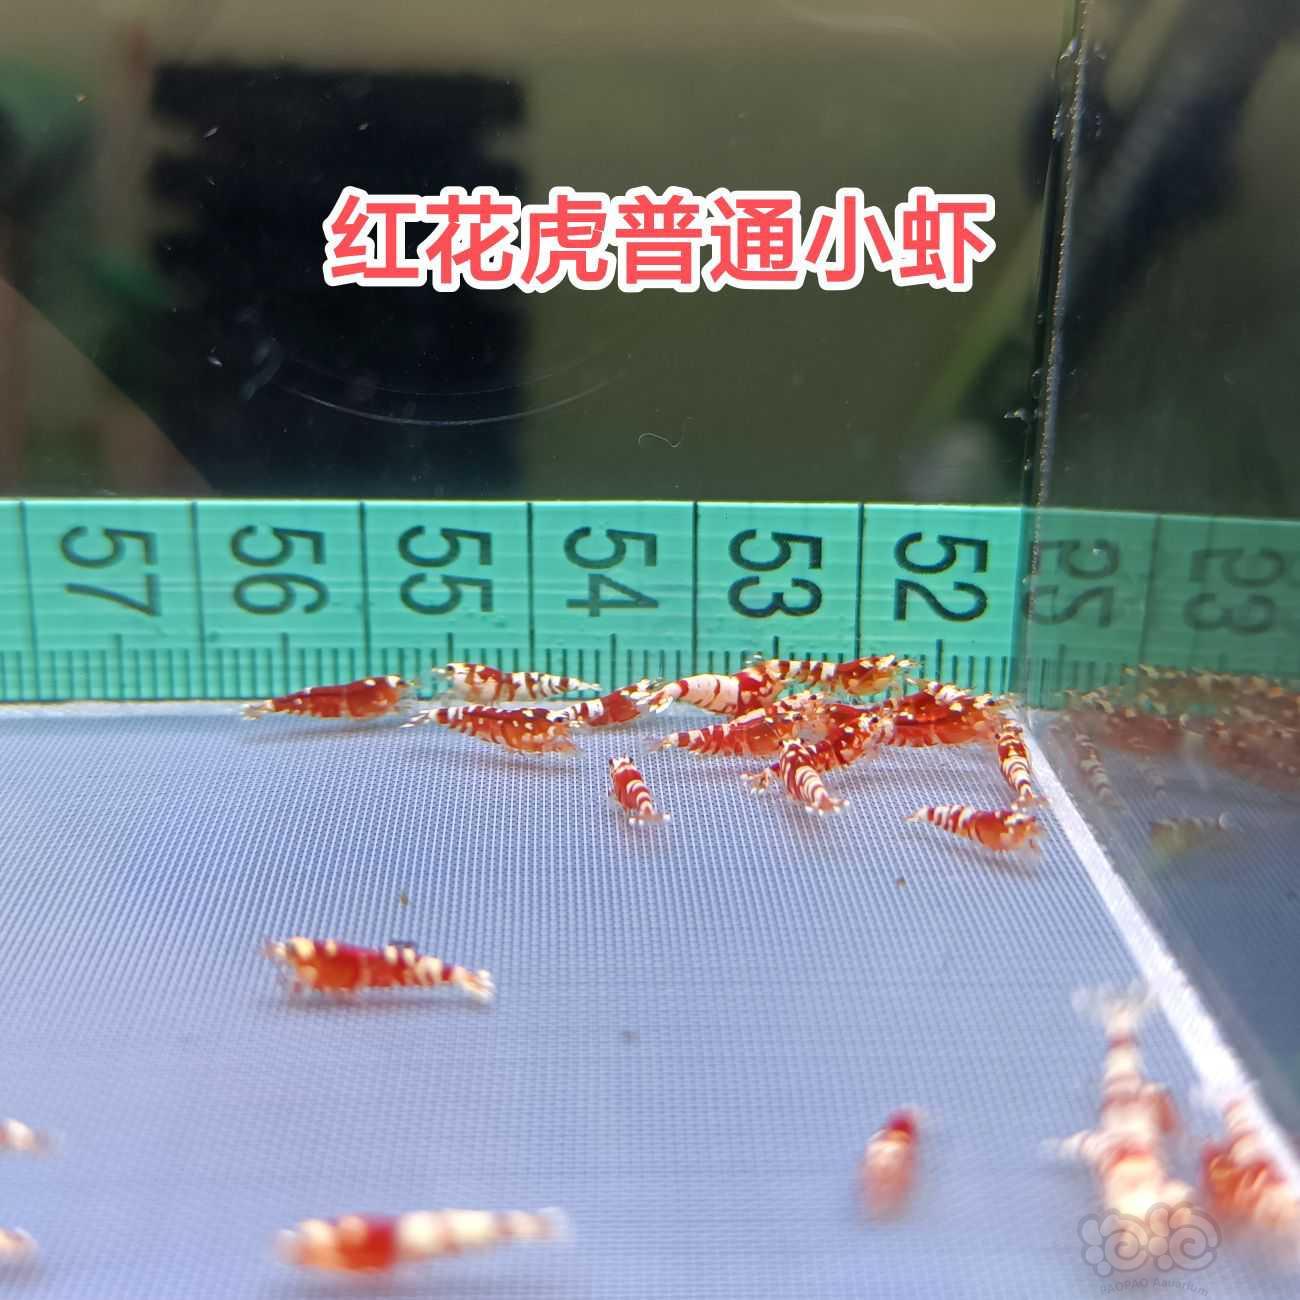 【水晶虾】出红银河红花虎-图1